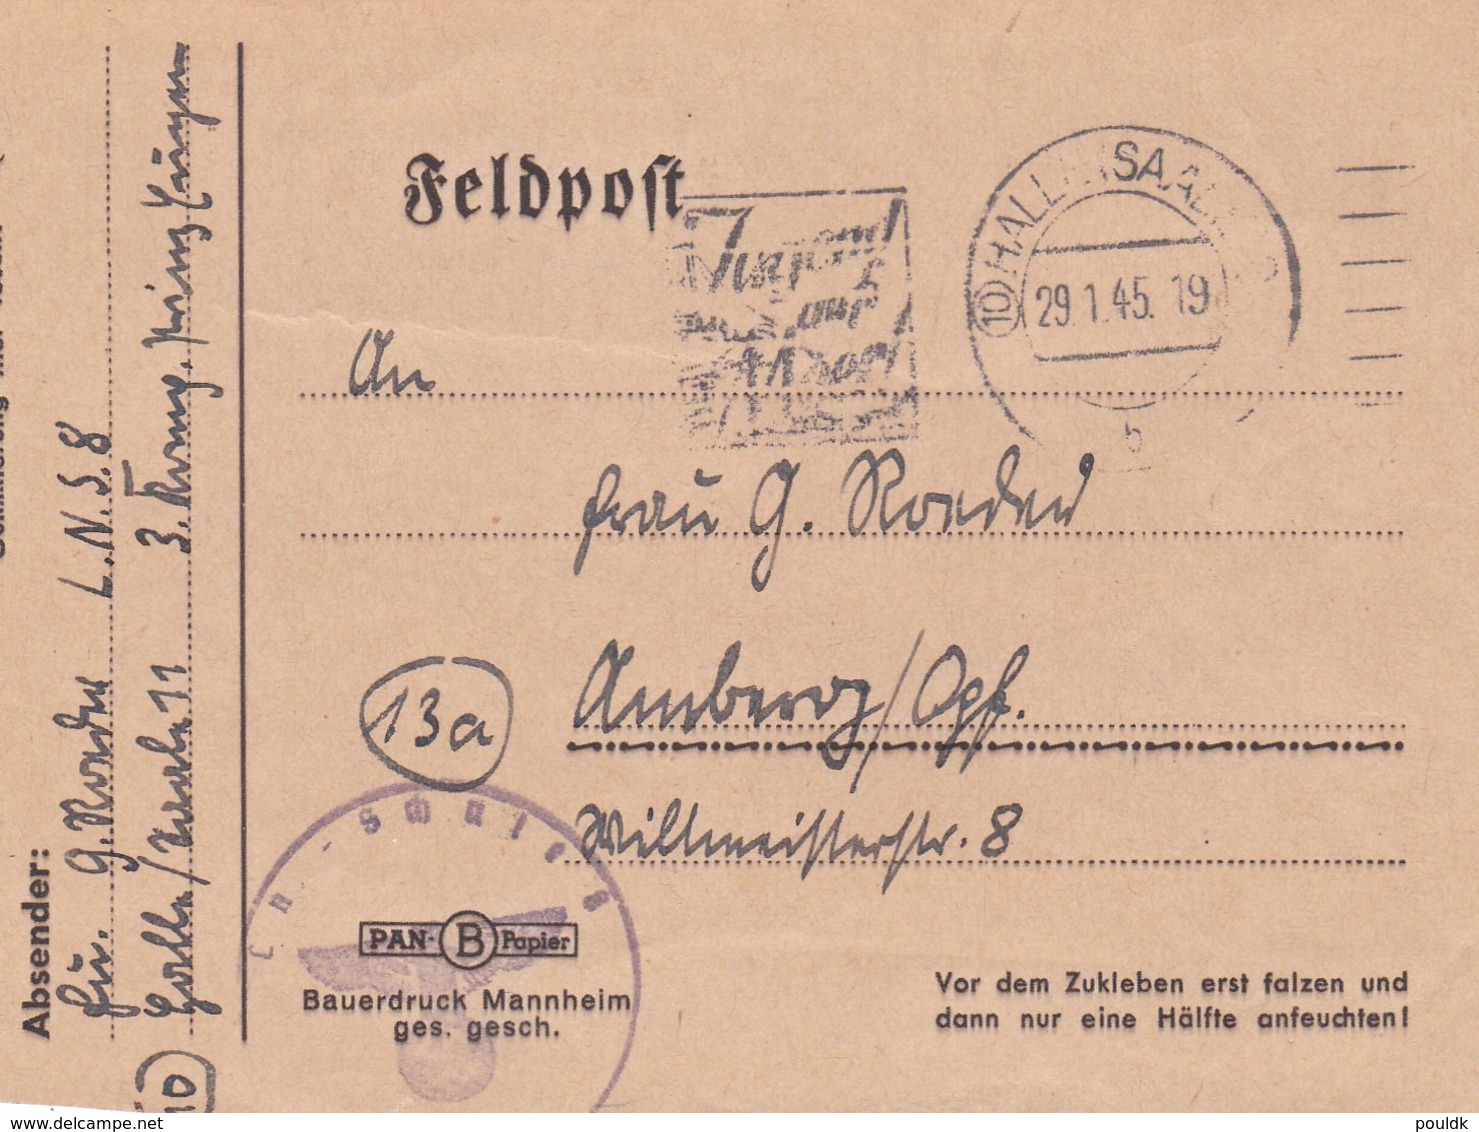 Late German Feldpost WW2: Luftnachrichtenschule 8 P/m Halle (Saale) 29.1.1945 - Letter Inside  (B562) - Militaria